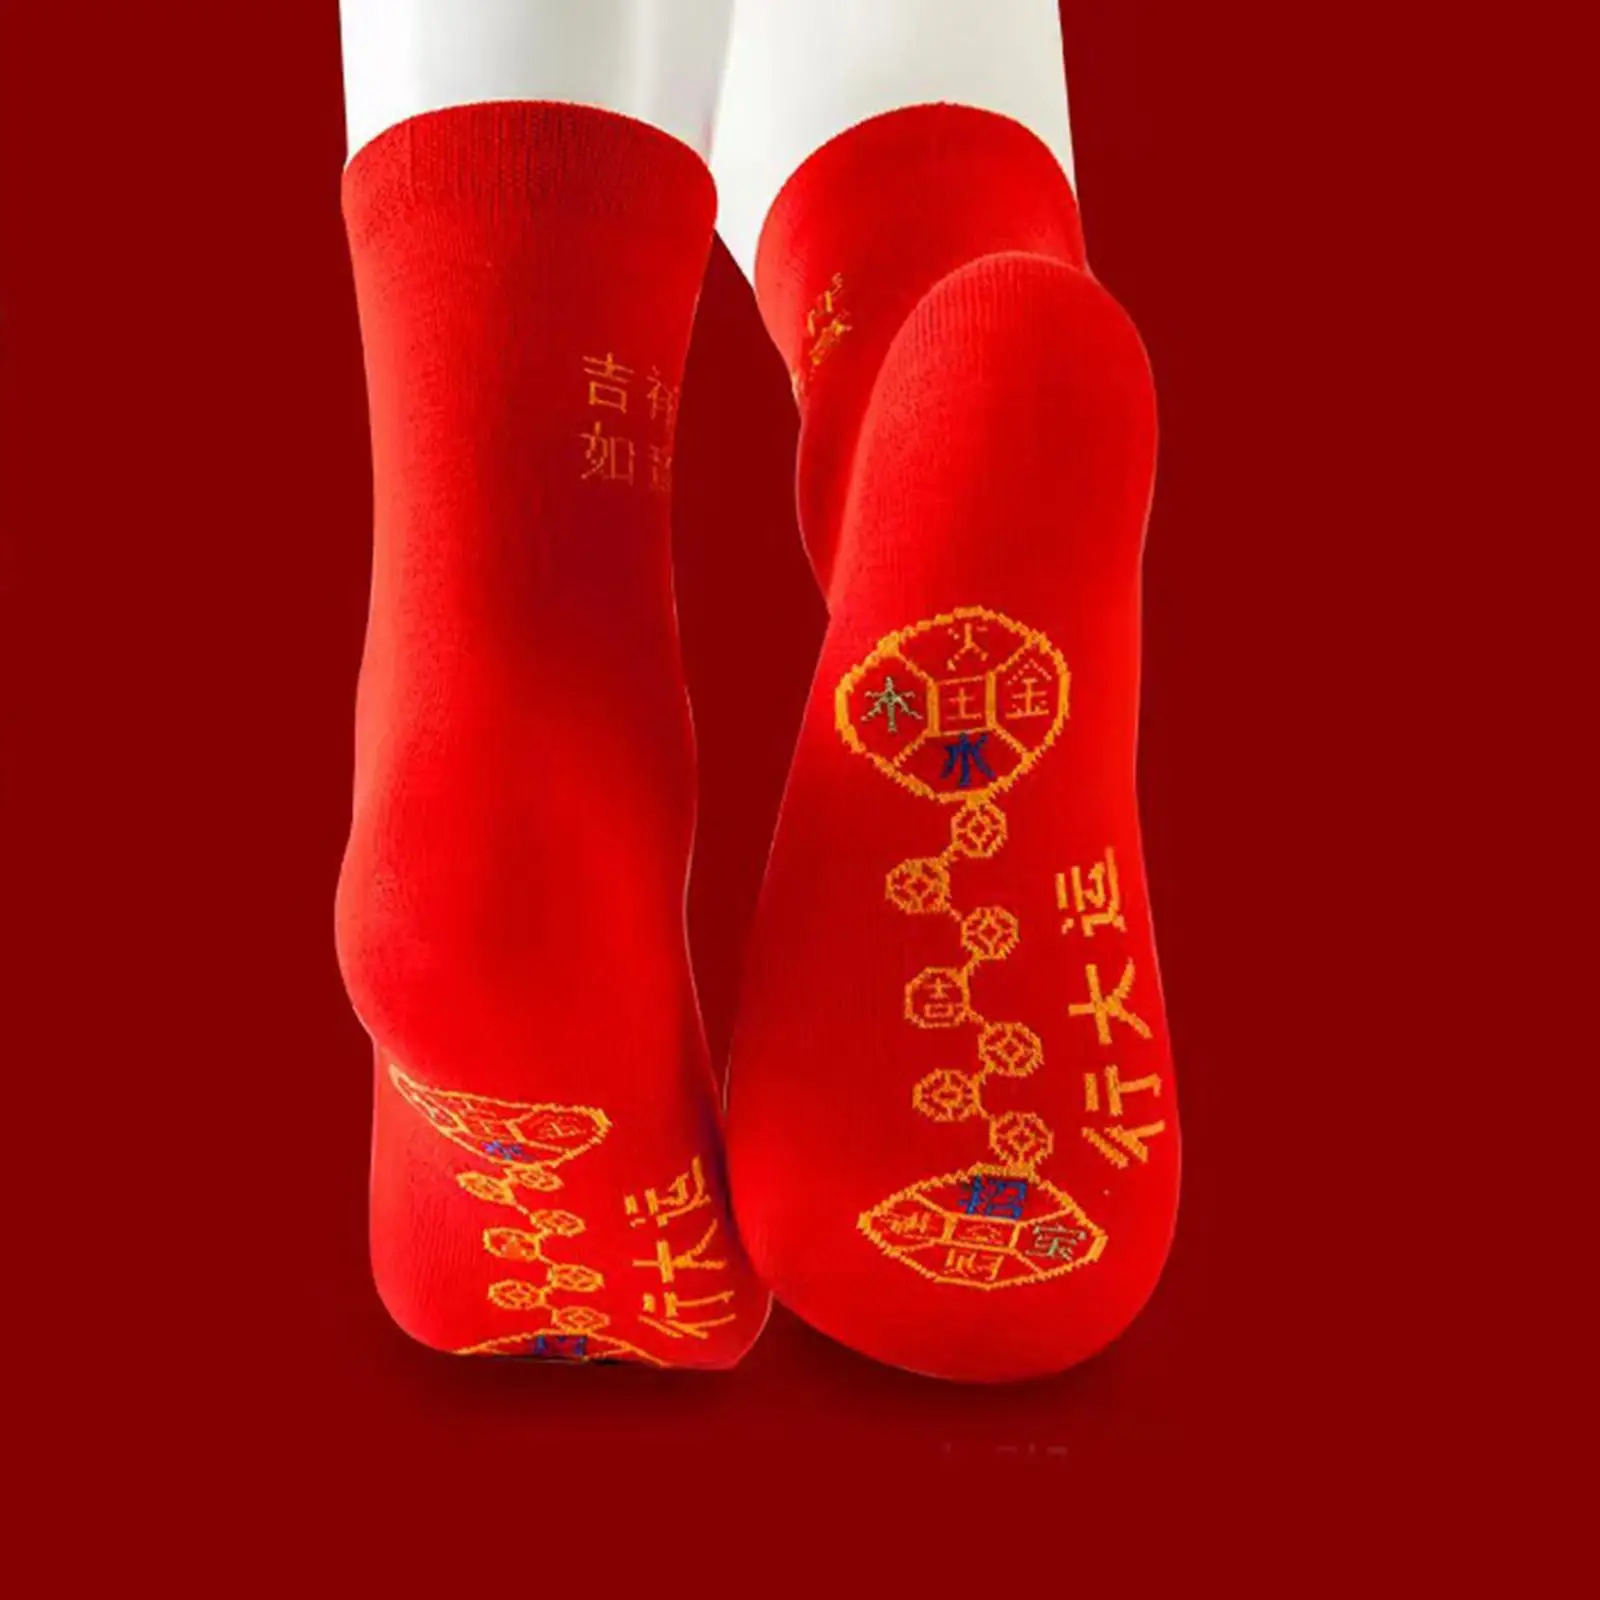 

Китайские новогодние красные носки, весенние Праздничные Носки для взрослых, подростковые носки с вышивкой китайских персонажей, празднич...